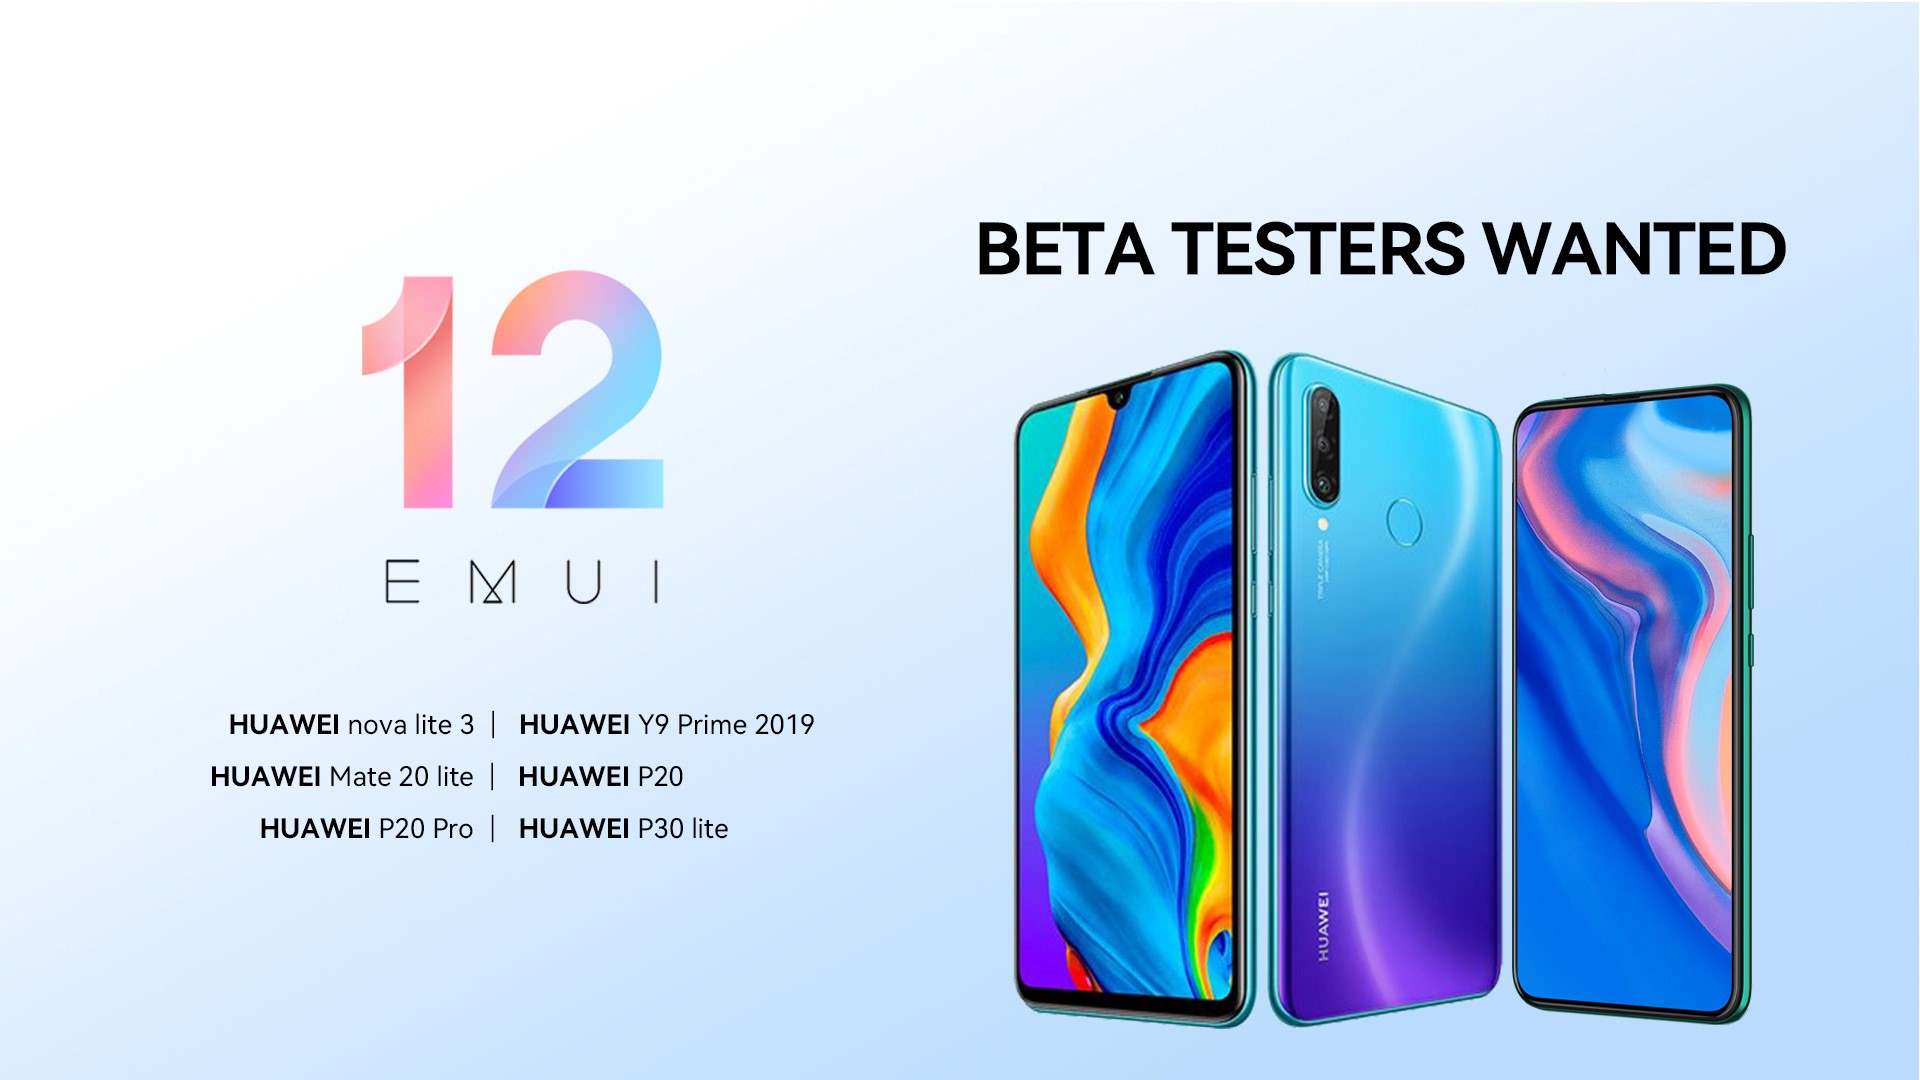 Вы сейчас просматриваете БЕТА-ТЕСТ EMUI 12 в России для Huawei P smart 2019, Mate 20 lite, P20 Pro, Y9 Prime 2019, P20, P30 lite